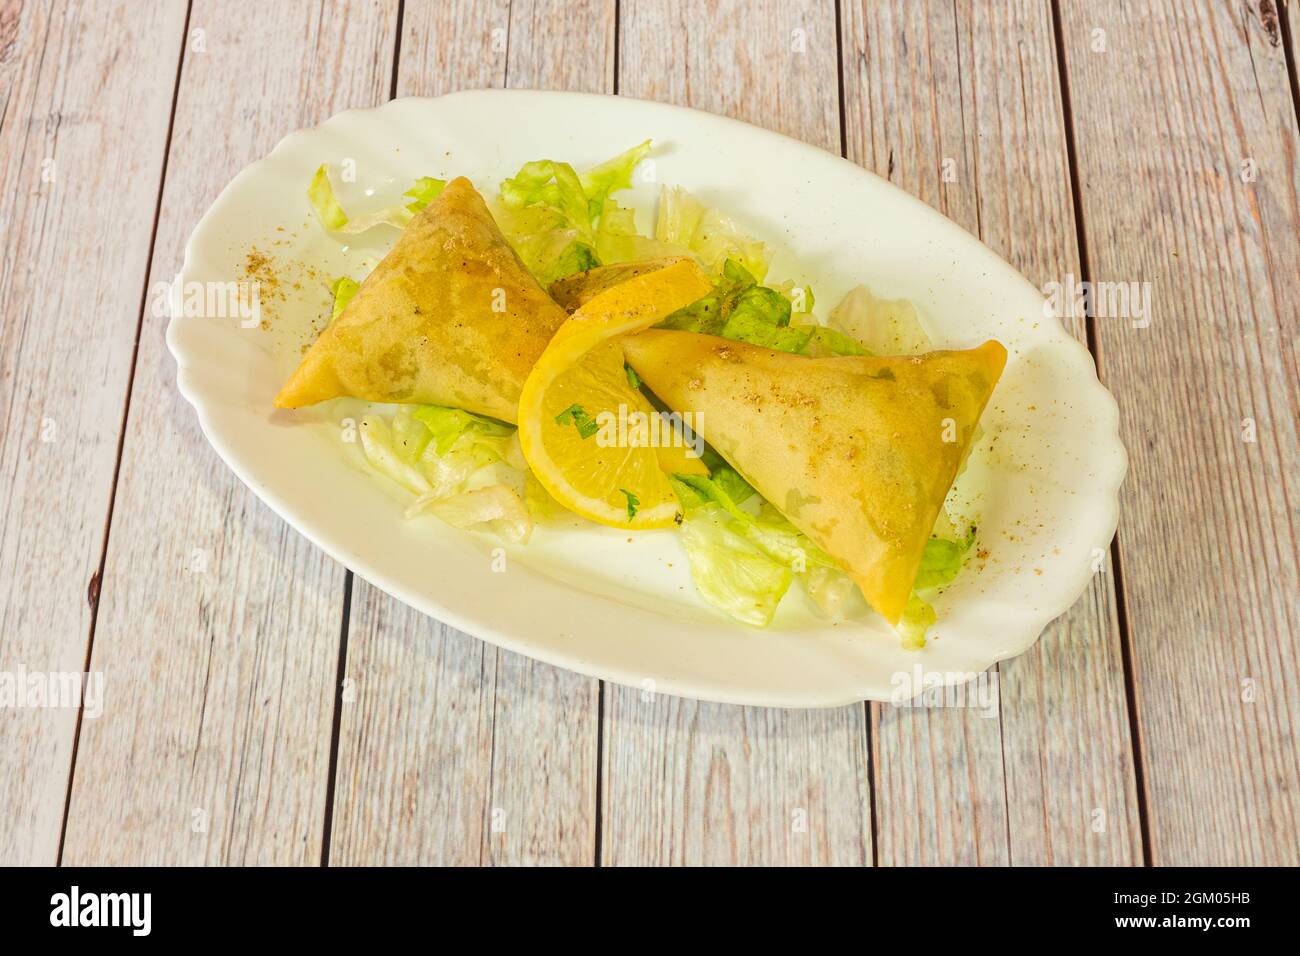 Portion de samosa de légumes servie dans un restaurant hindou avec de la laitue iceberg et une tranche de citron au poivre et au curry moulu Banque D'Images